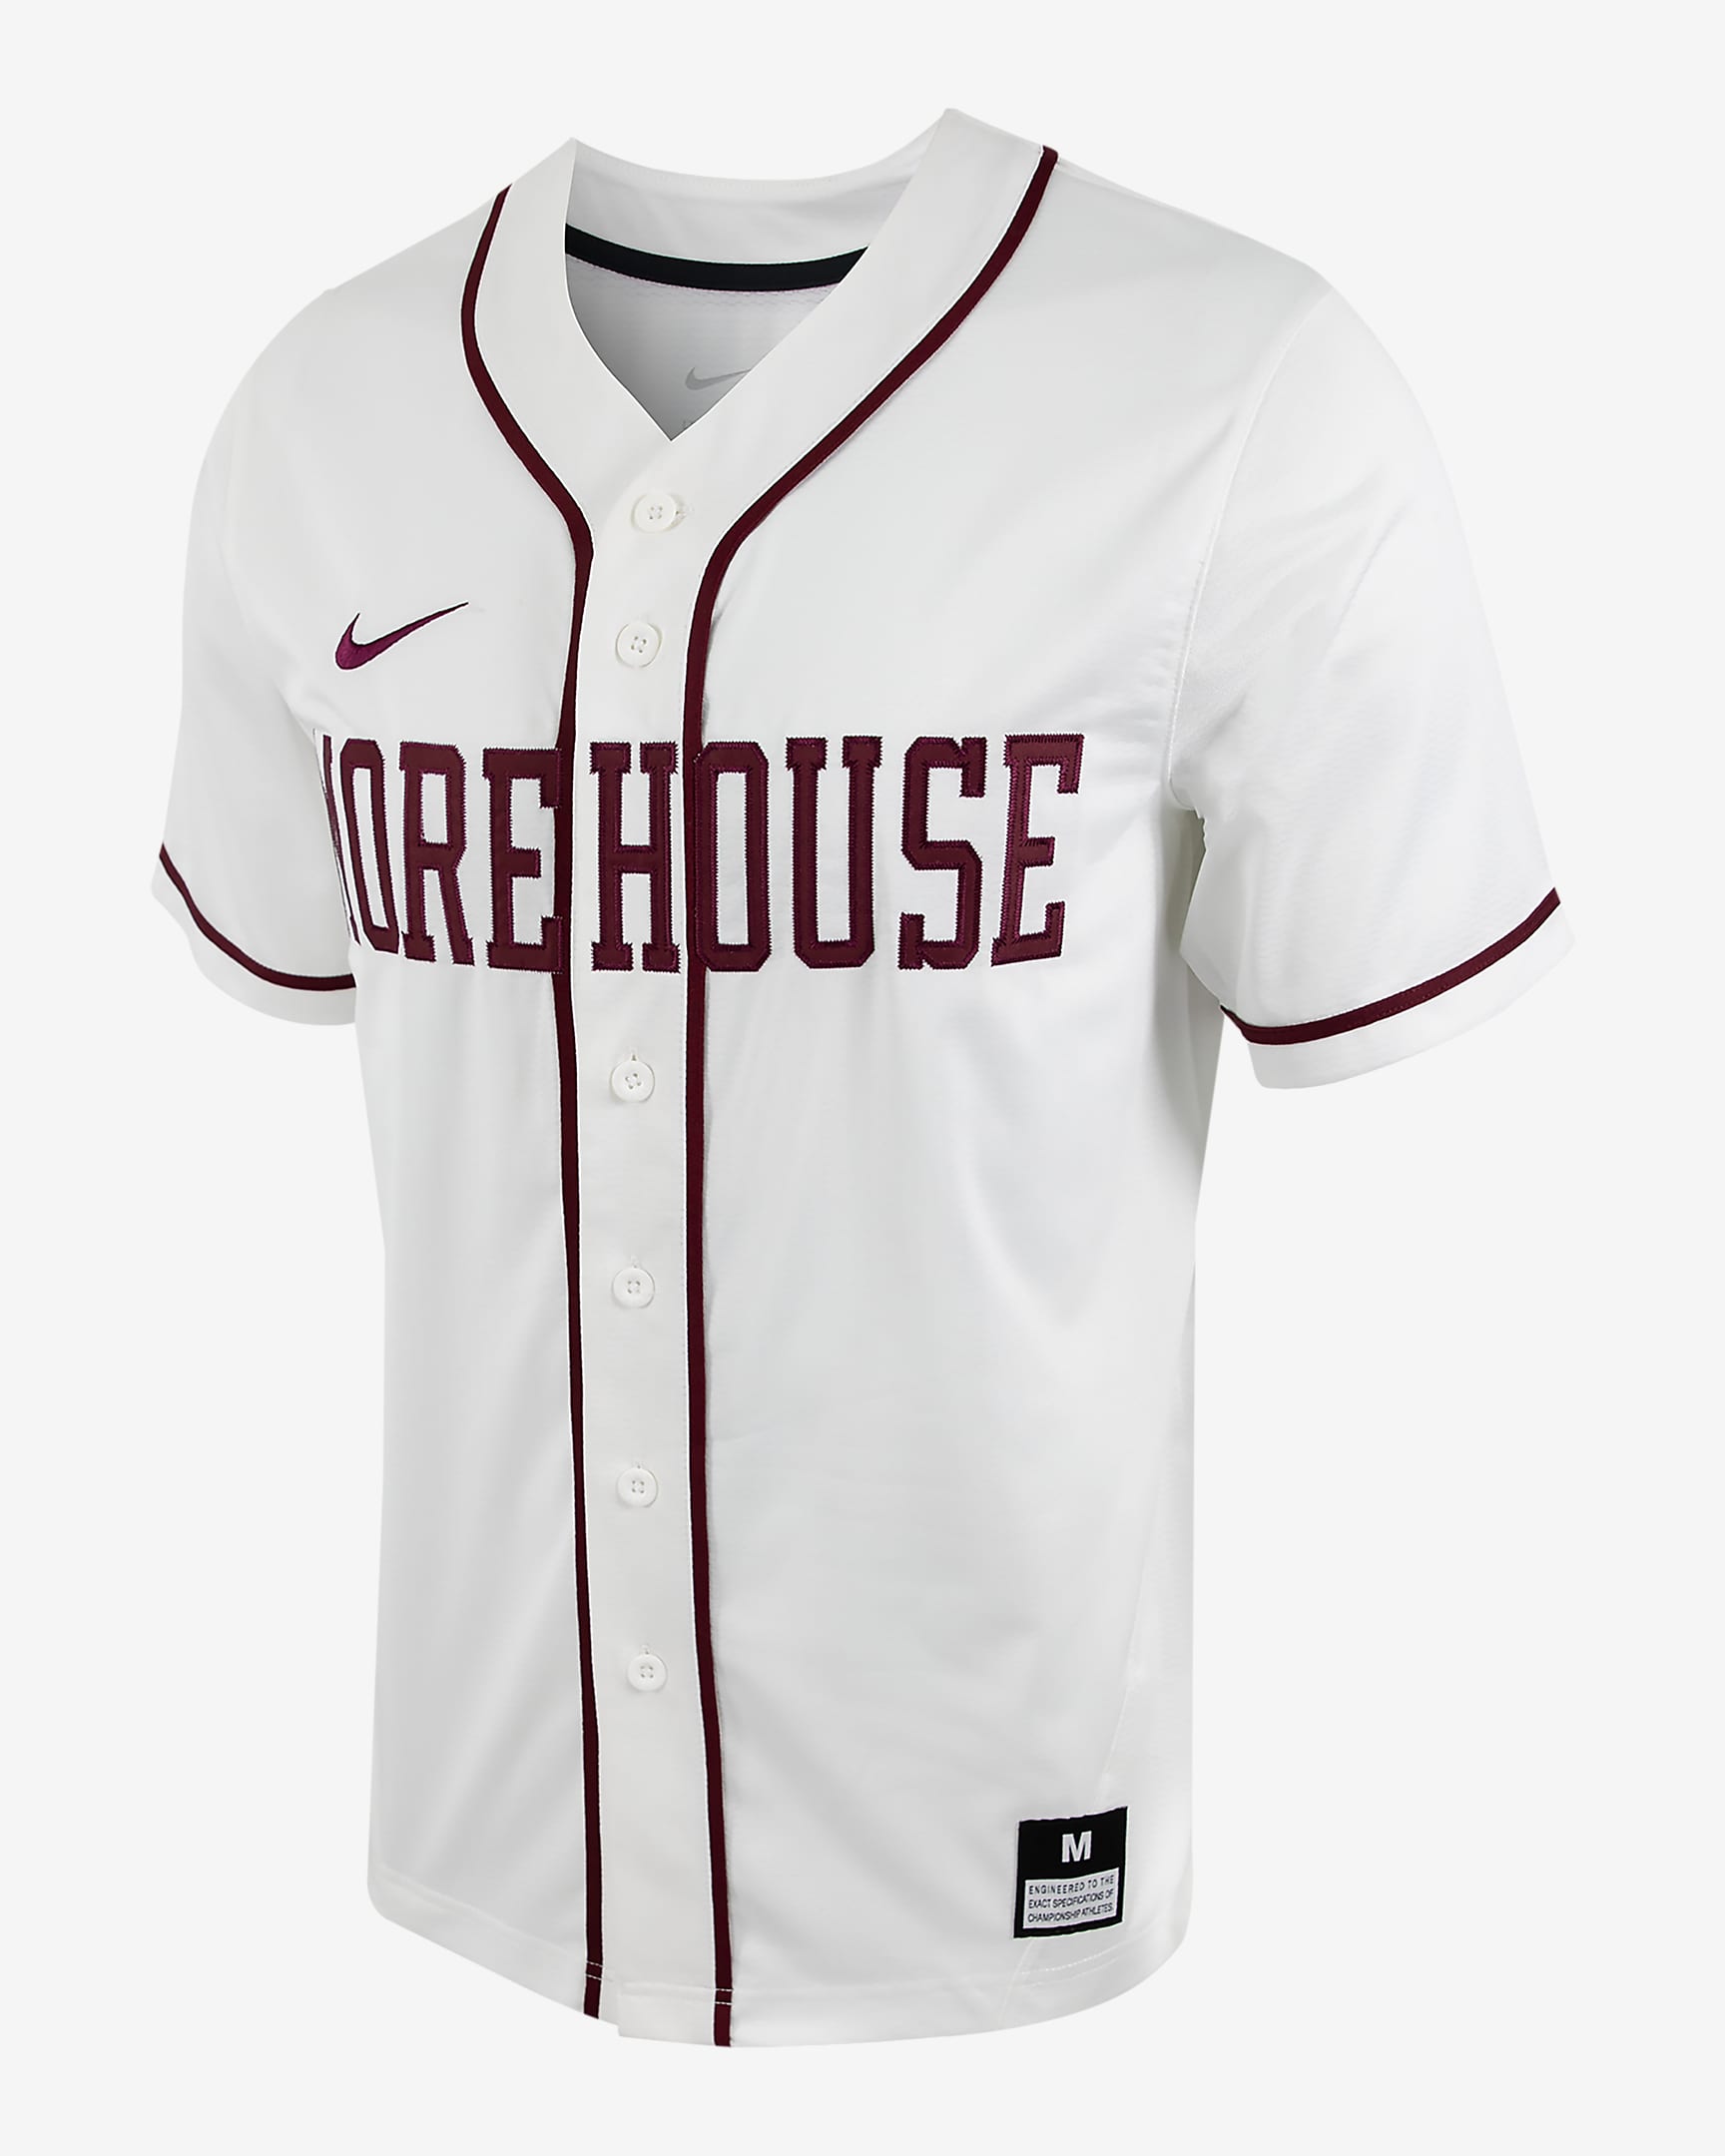 Jersey de béisbol con botones Nike College para hombre Morehouse. Nike.com